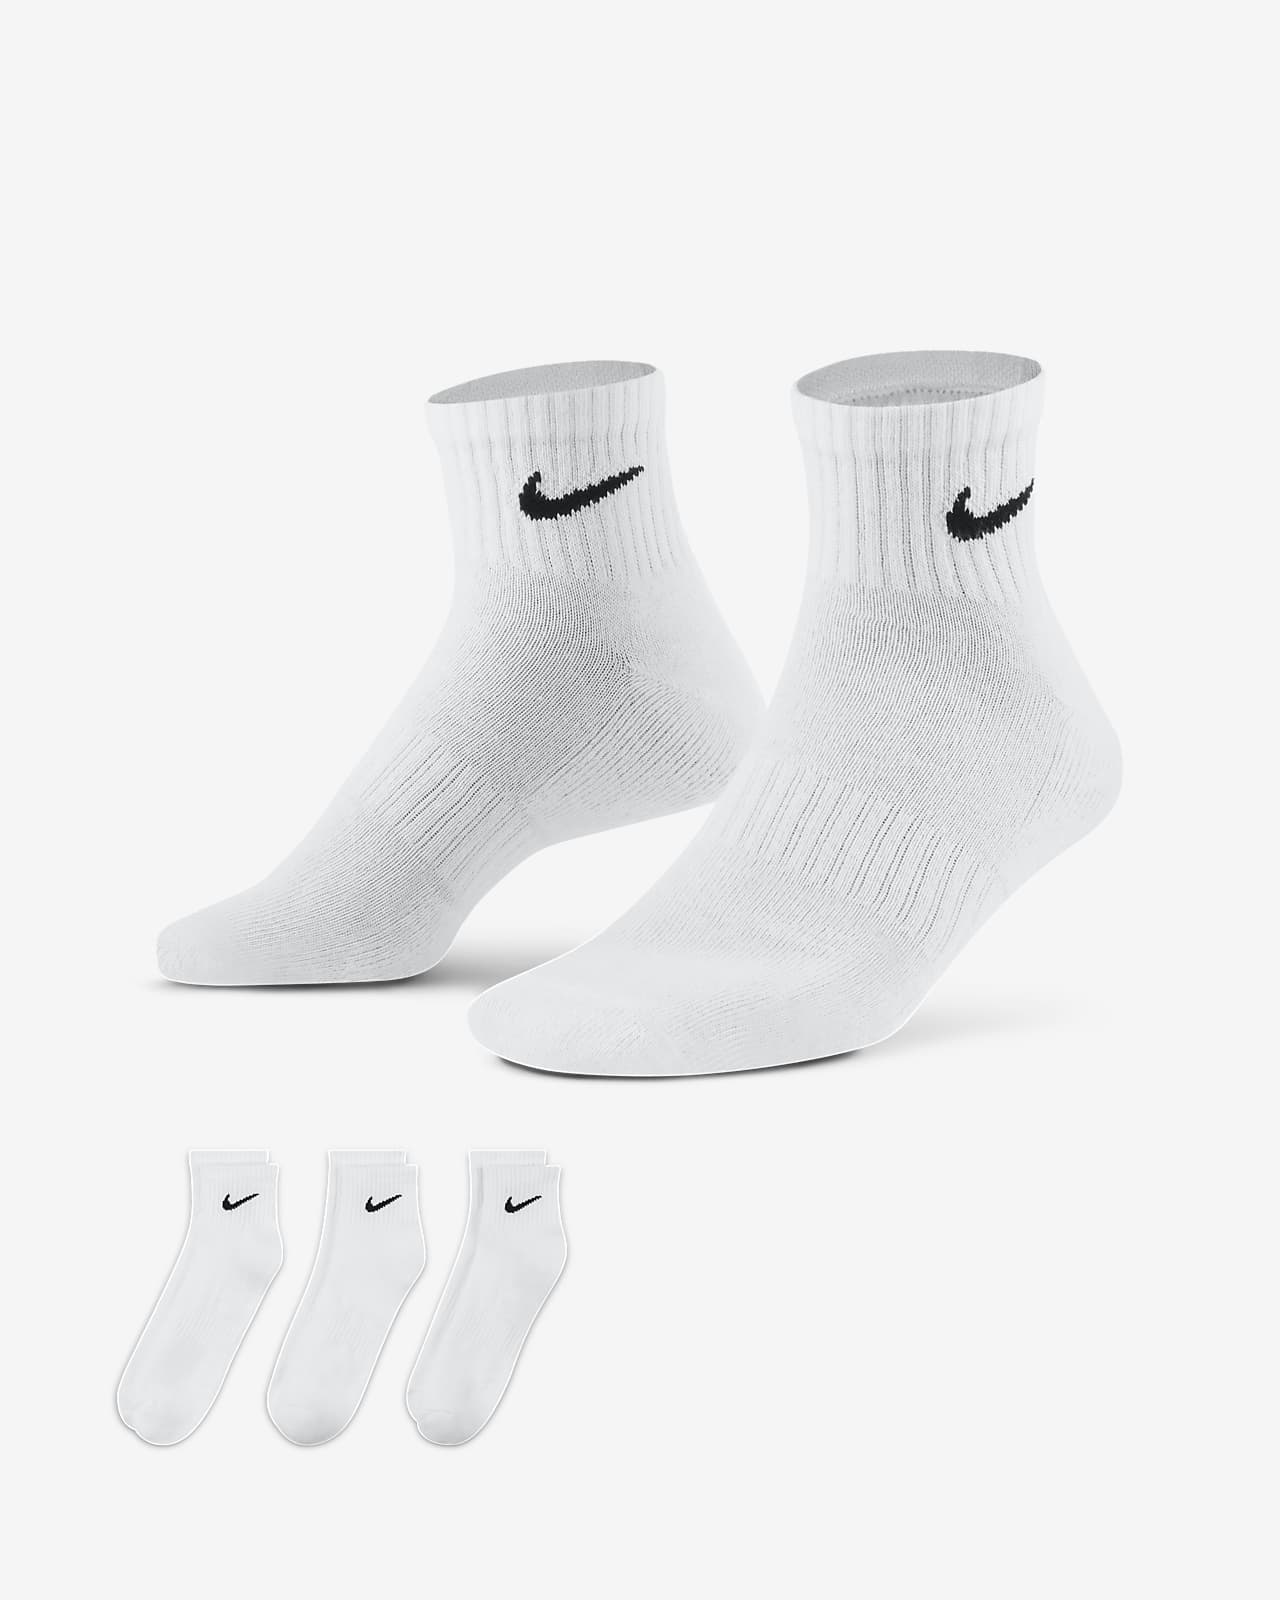 ถุงเท้าเทรนนิ่งหุ้มข้อ Nike Everyday Cushioned (3 คู่)